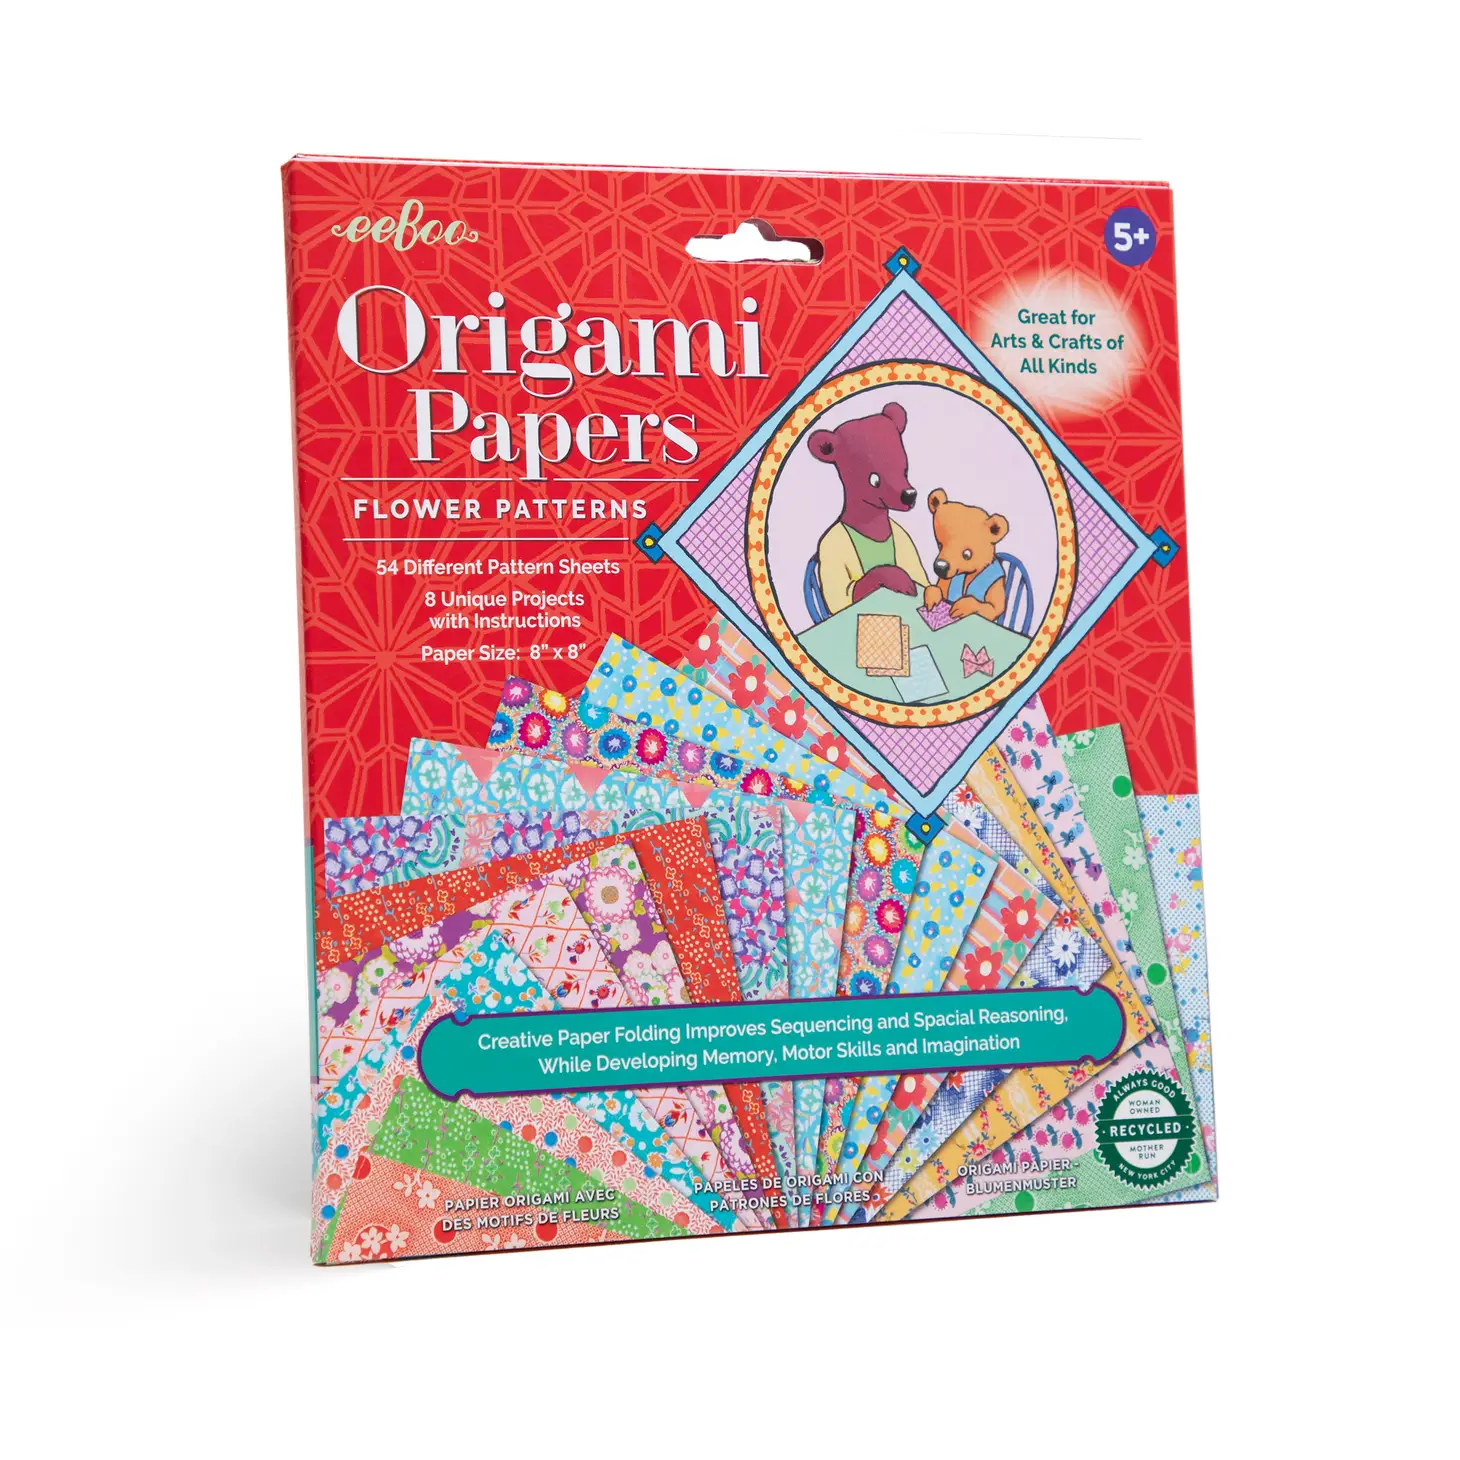 eeboo Flower Patterns Original Origami Papers